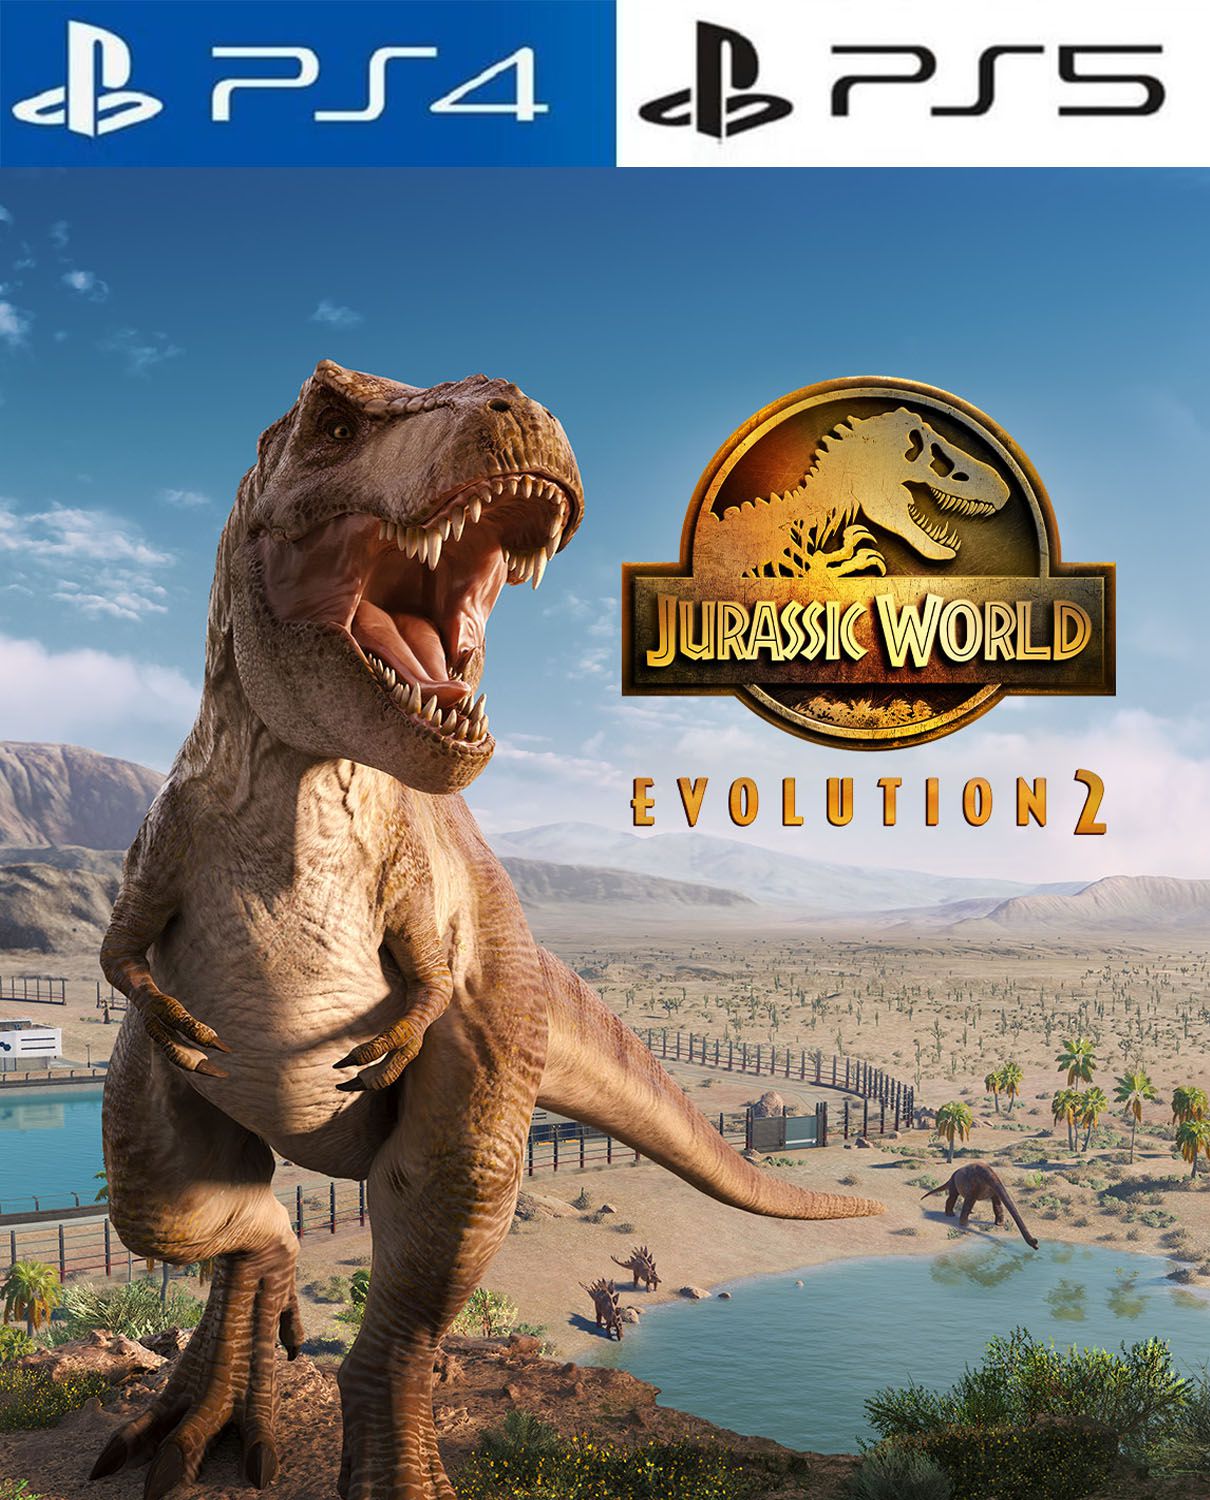 Jurassic World Evolution 2 traz novos dinossauros, modos de jogo e